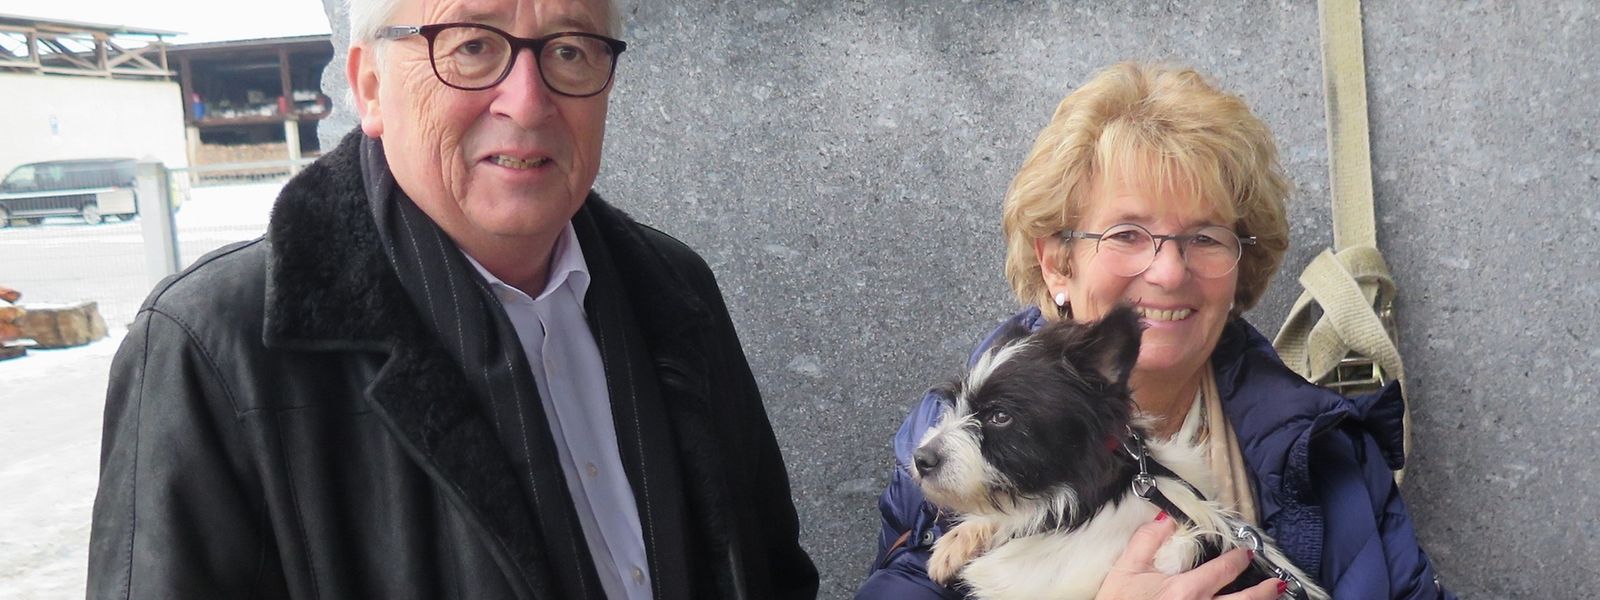 Jean-Claude Juncker und Ehefrau Christiane begrüßen ihren neuen Liebling.